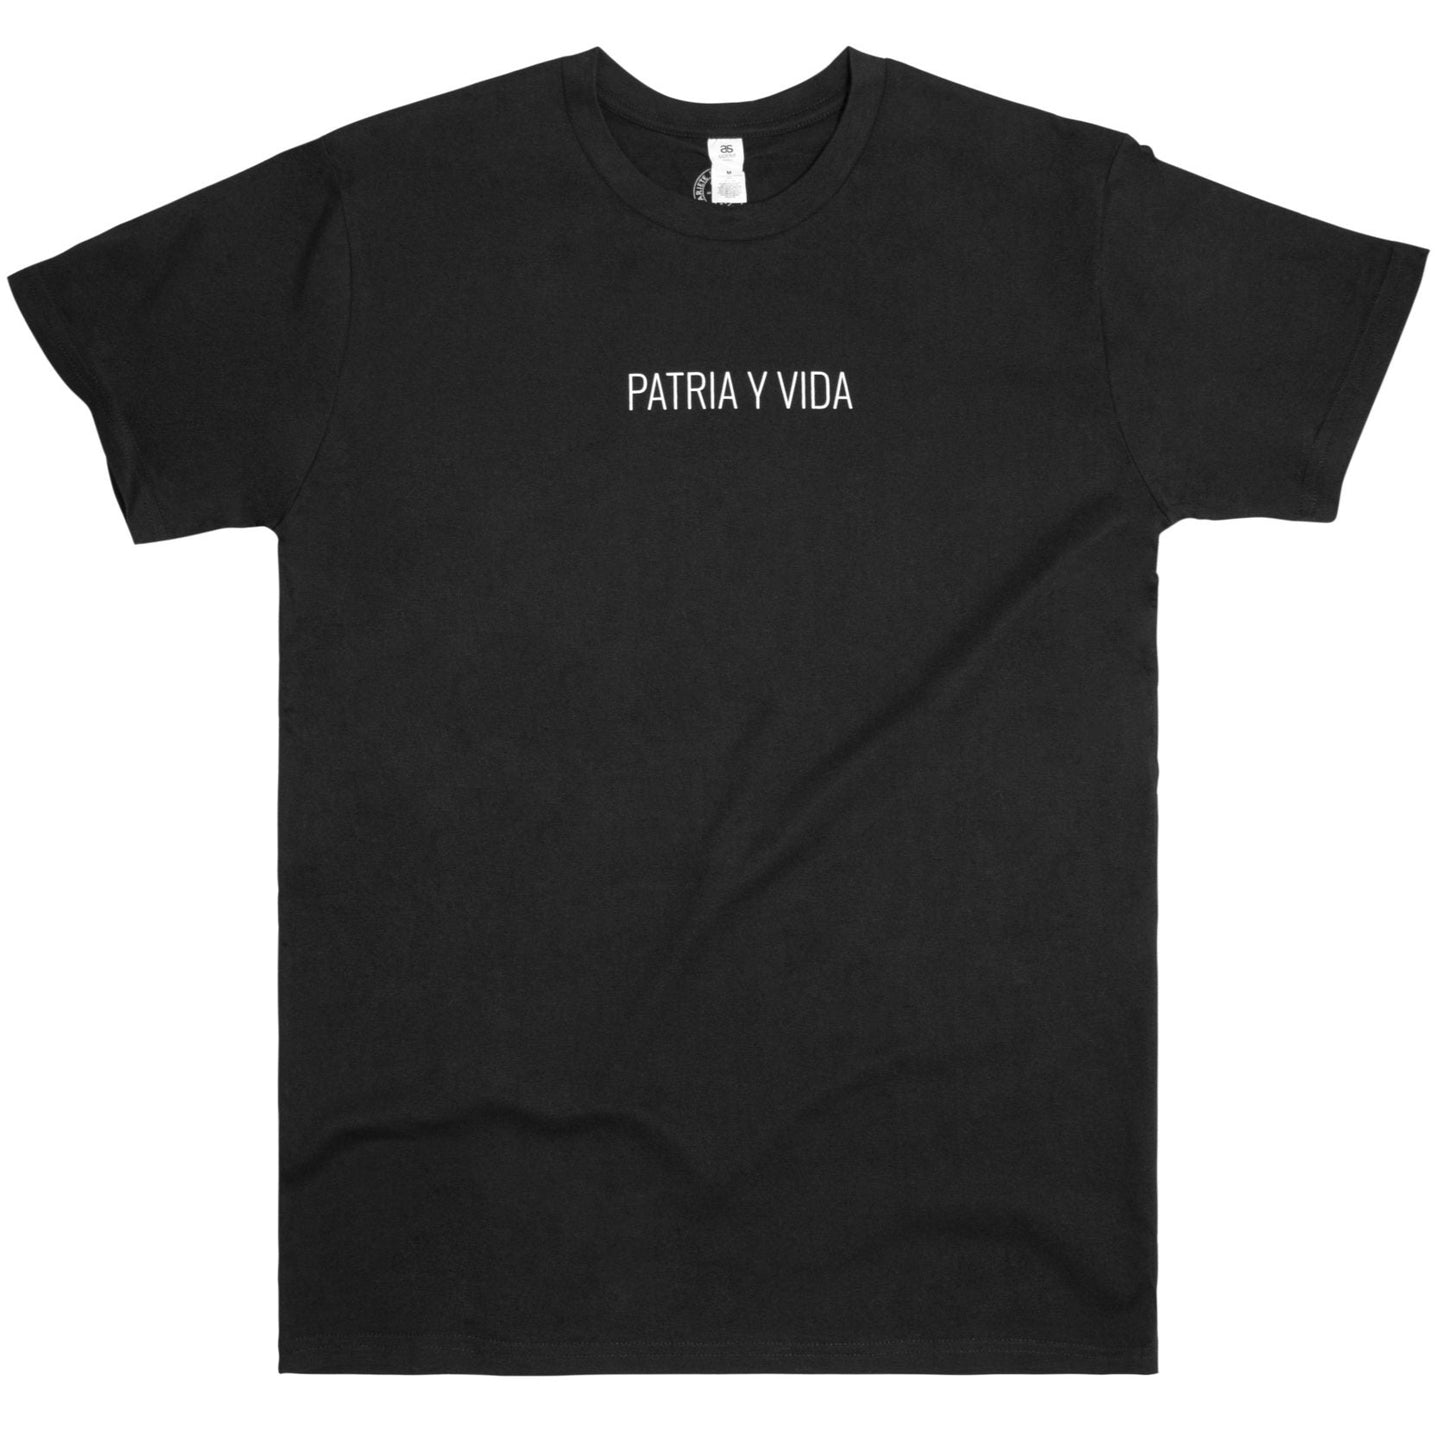 PATRIA Y VIDA T-shirt - Black